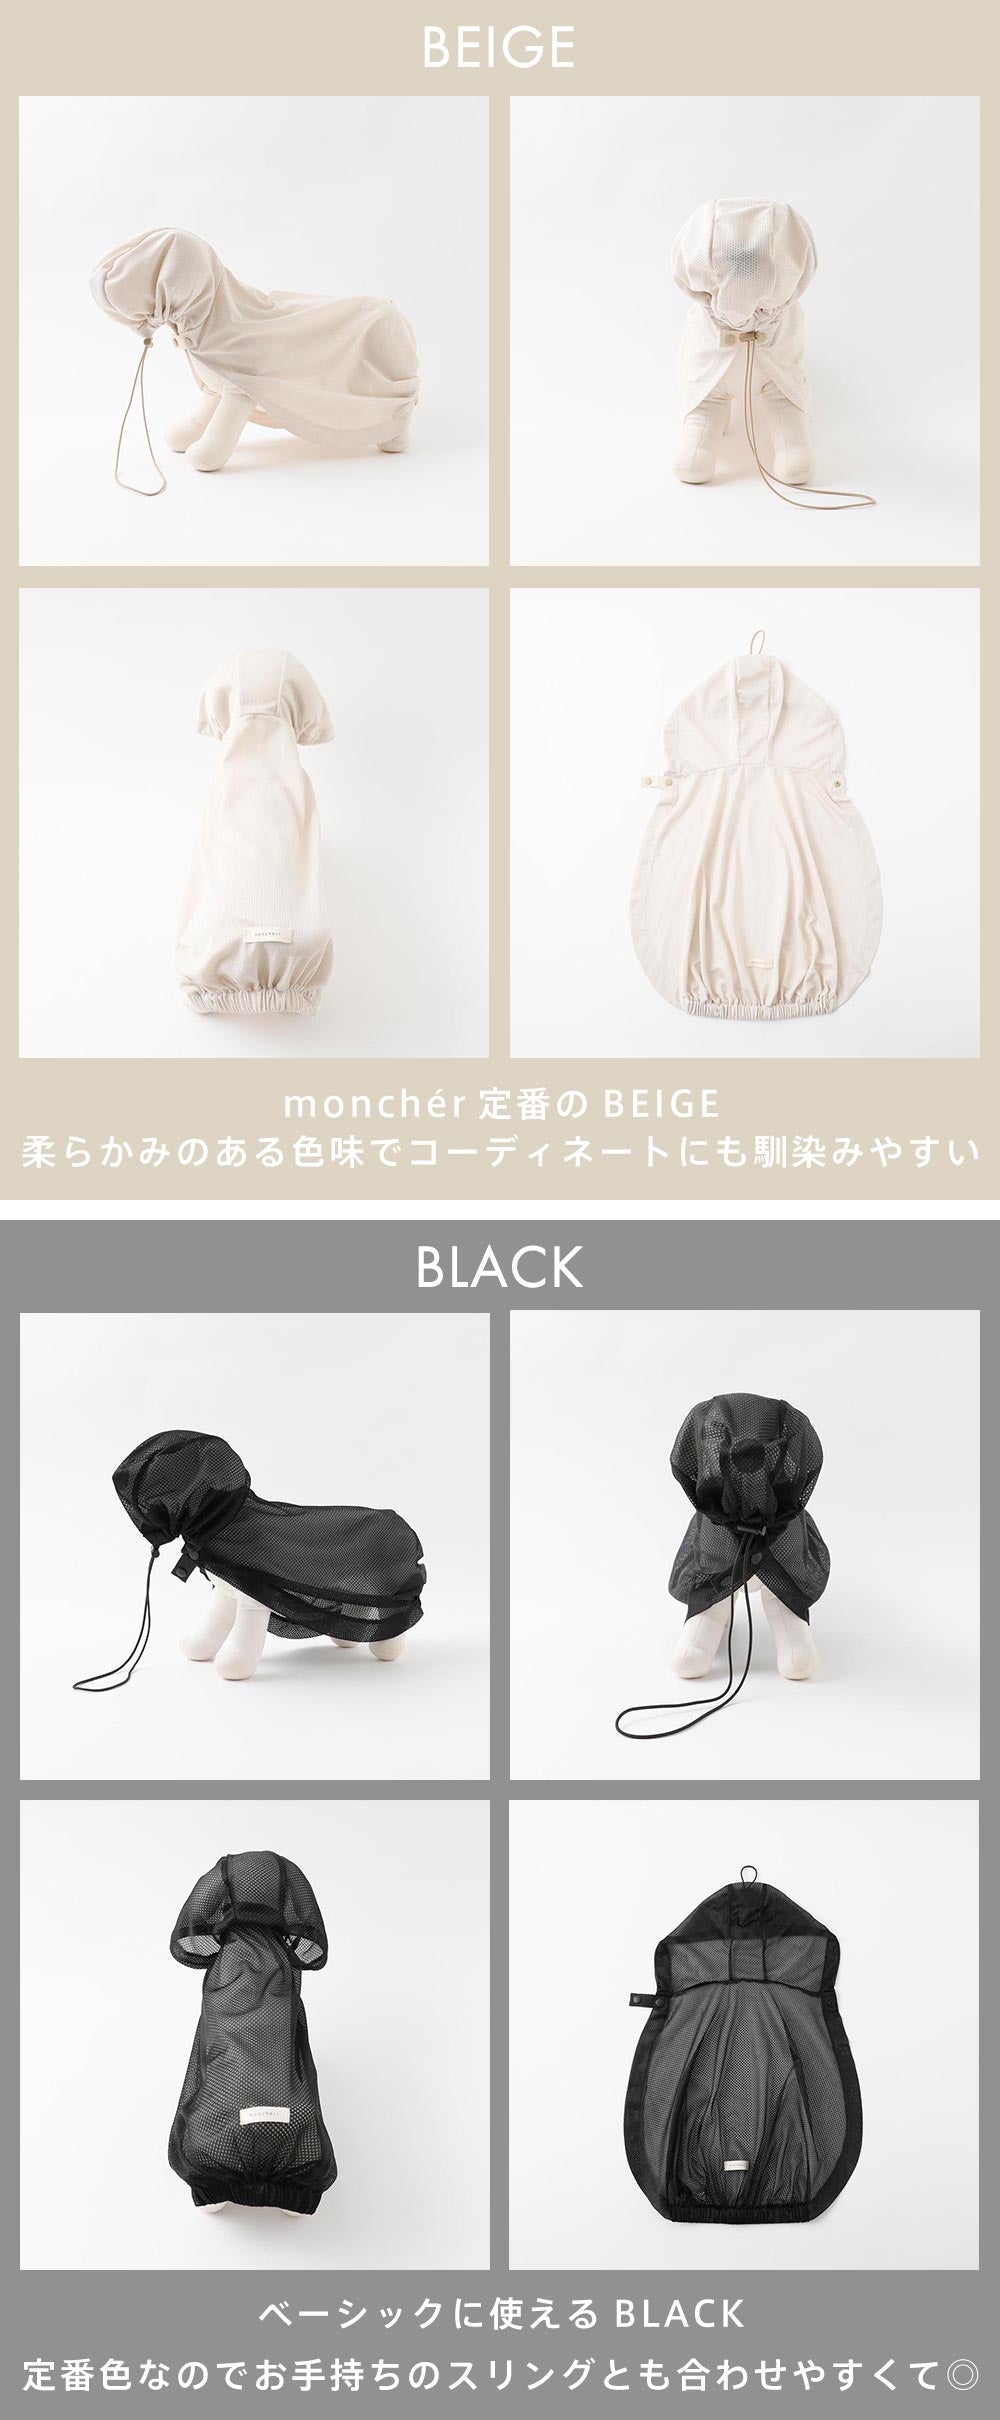 小型犬/キャリーバック/スリング/抱っこ紐/おしゃれ/メッシュ/カラーバリエーション/ベージュ/ブラック